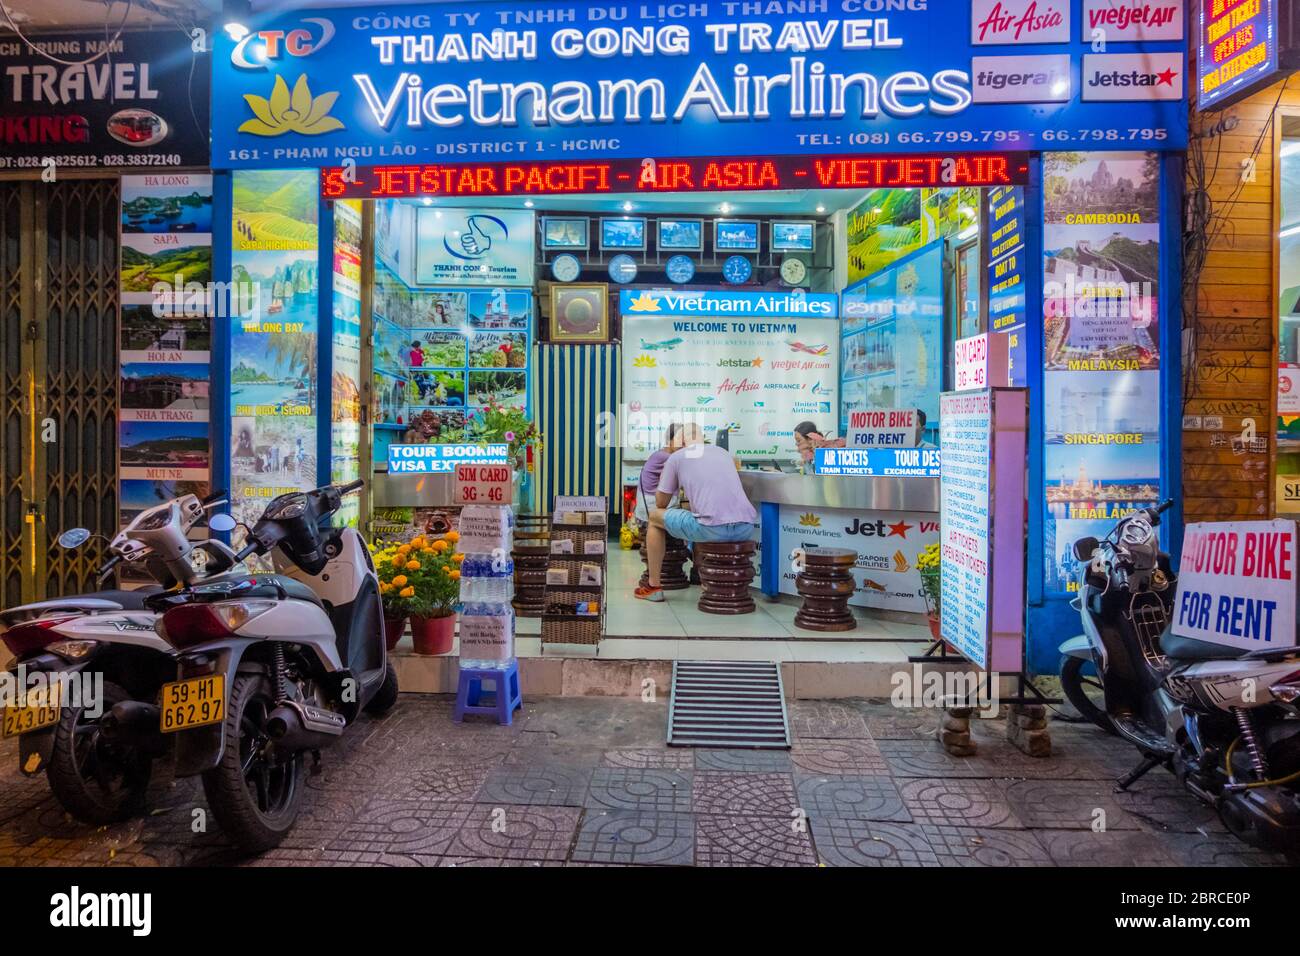 Travel agency, Pham Ngu Lao, Ho Chi Minh City, Vietnam, Asia Stock Photo